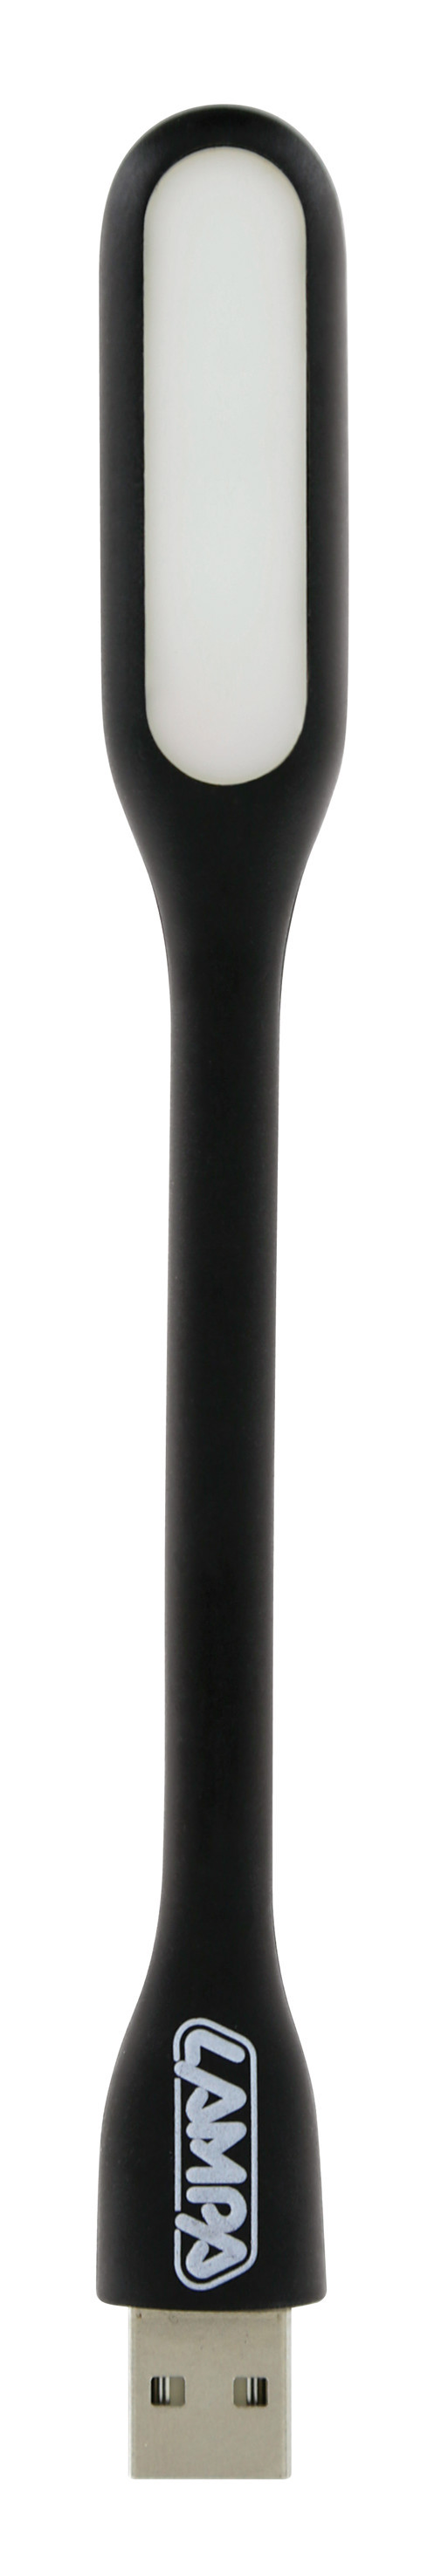 Lampa citit flexibila COB-LED 5V USB thumb